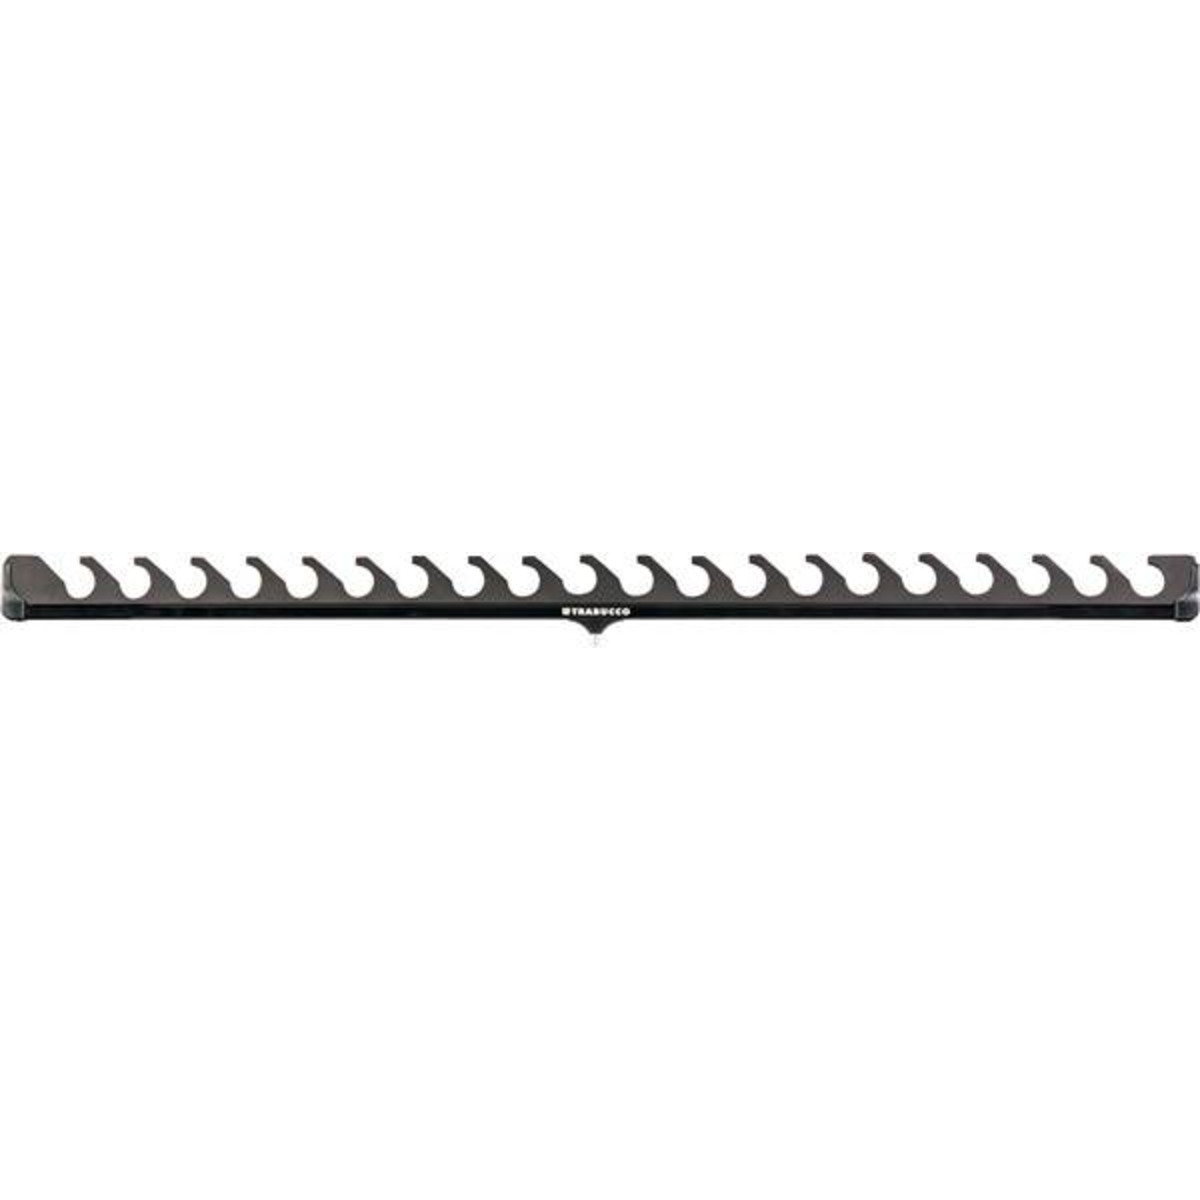 Trabucco Gnt Pole Rod Rest System - Front XXL/AW w20 Slots